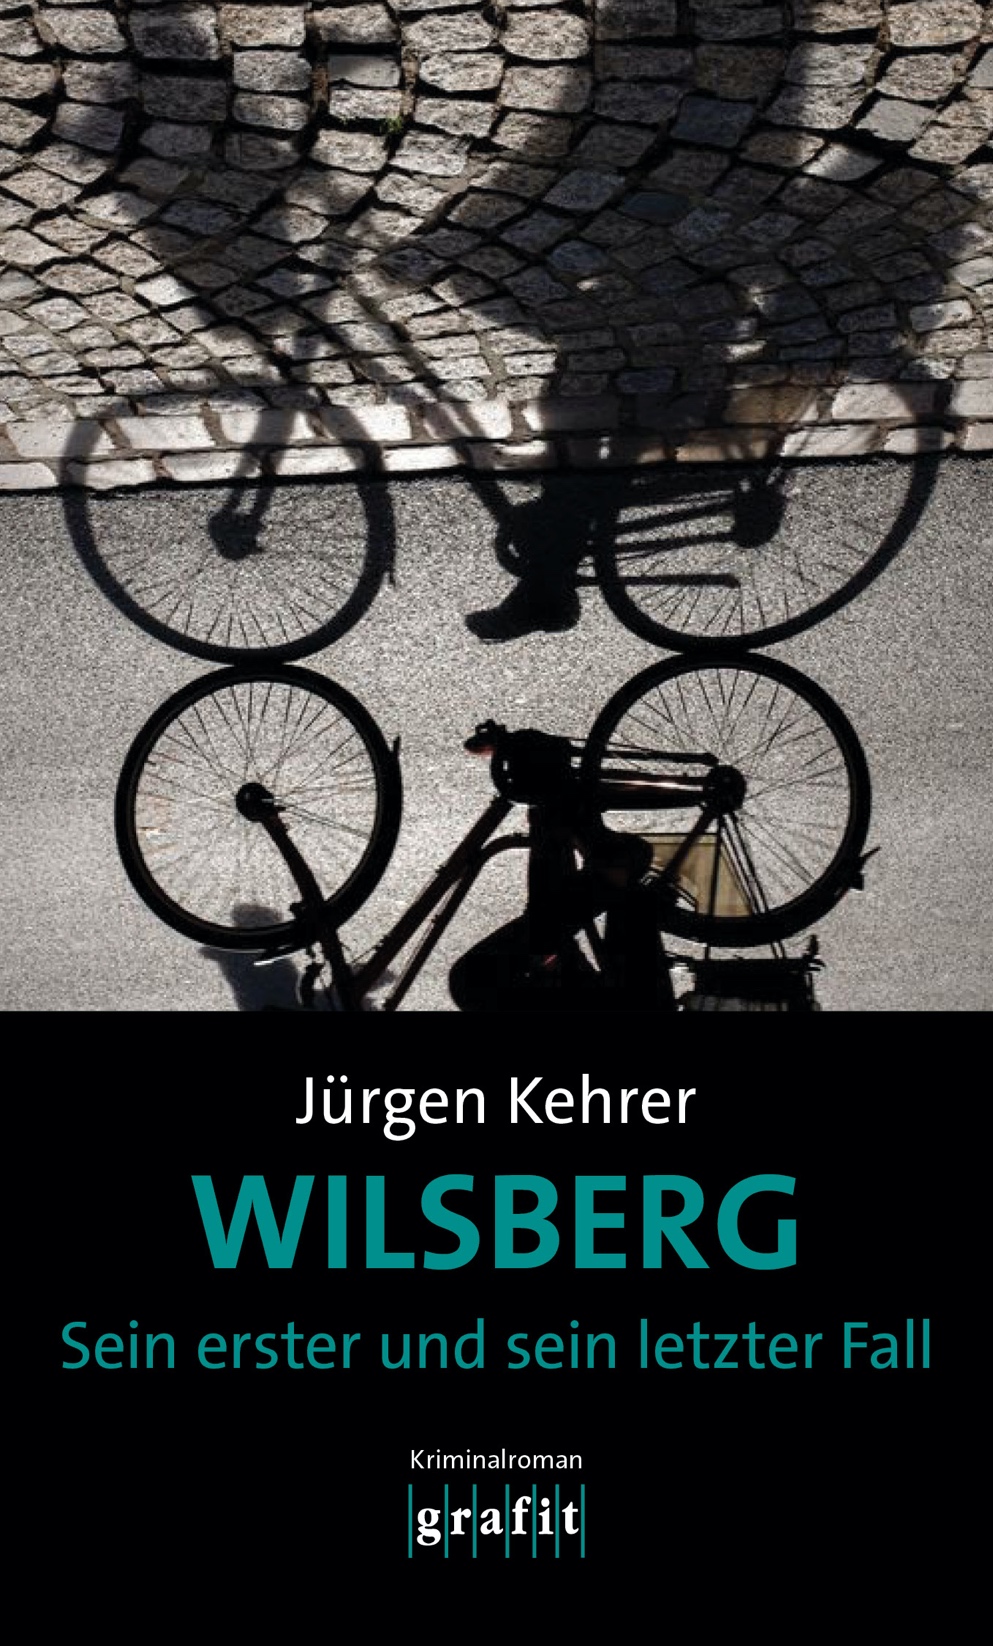 You are currently viewing Krimi Lesung “Wilsberg Sein erster und letzter Fall” mit Jürgen Kehrer